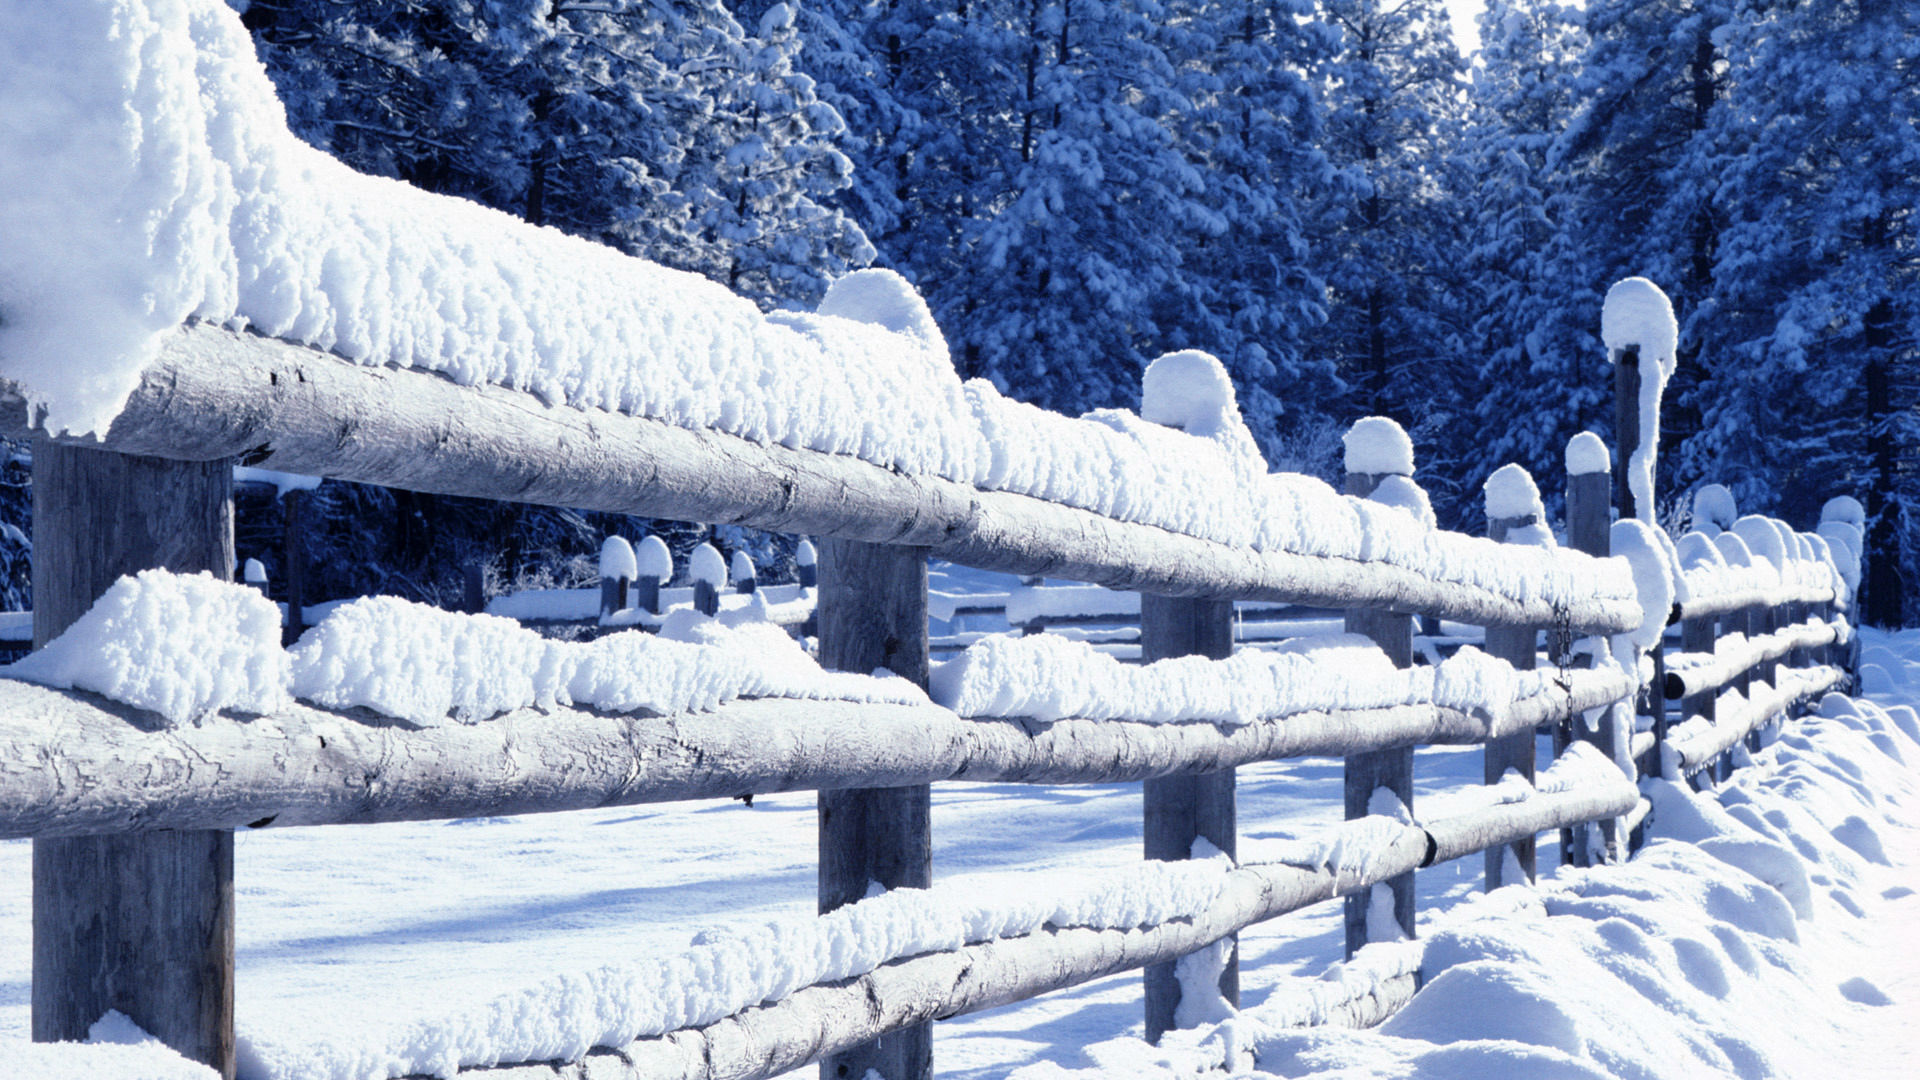 Скачать обои бесплатно Зима, Снег, Ограда, Фотографии картинка на рабочий стол ПК